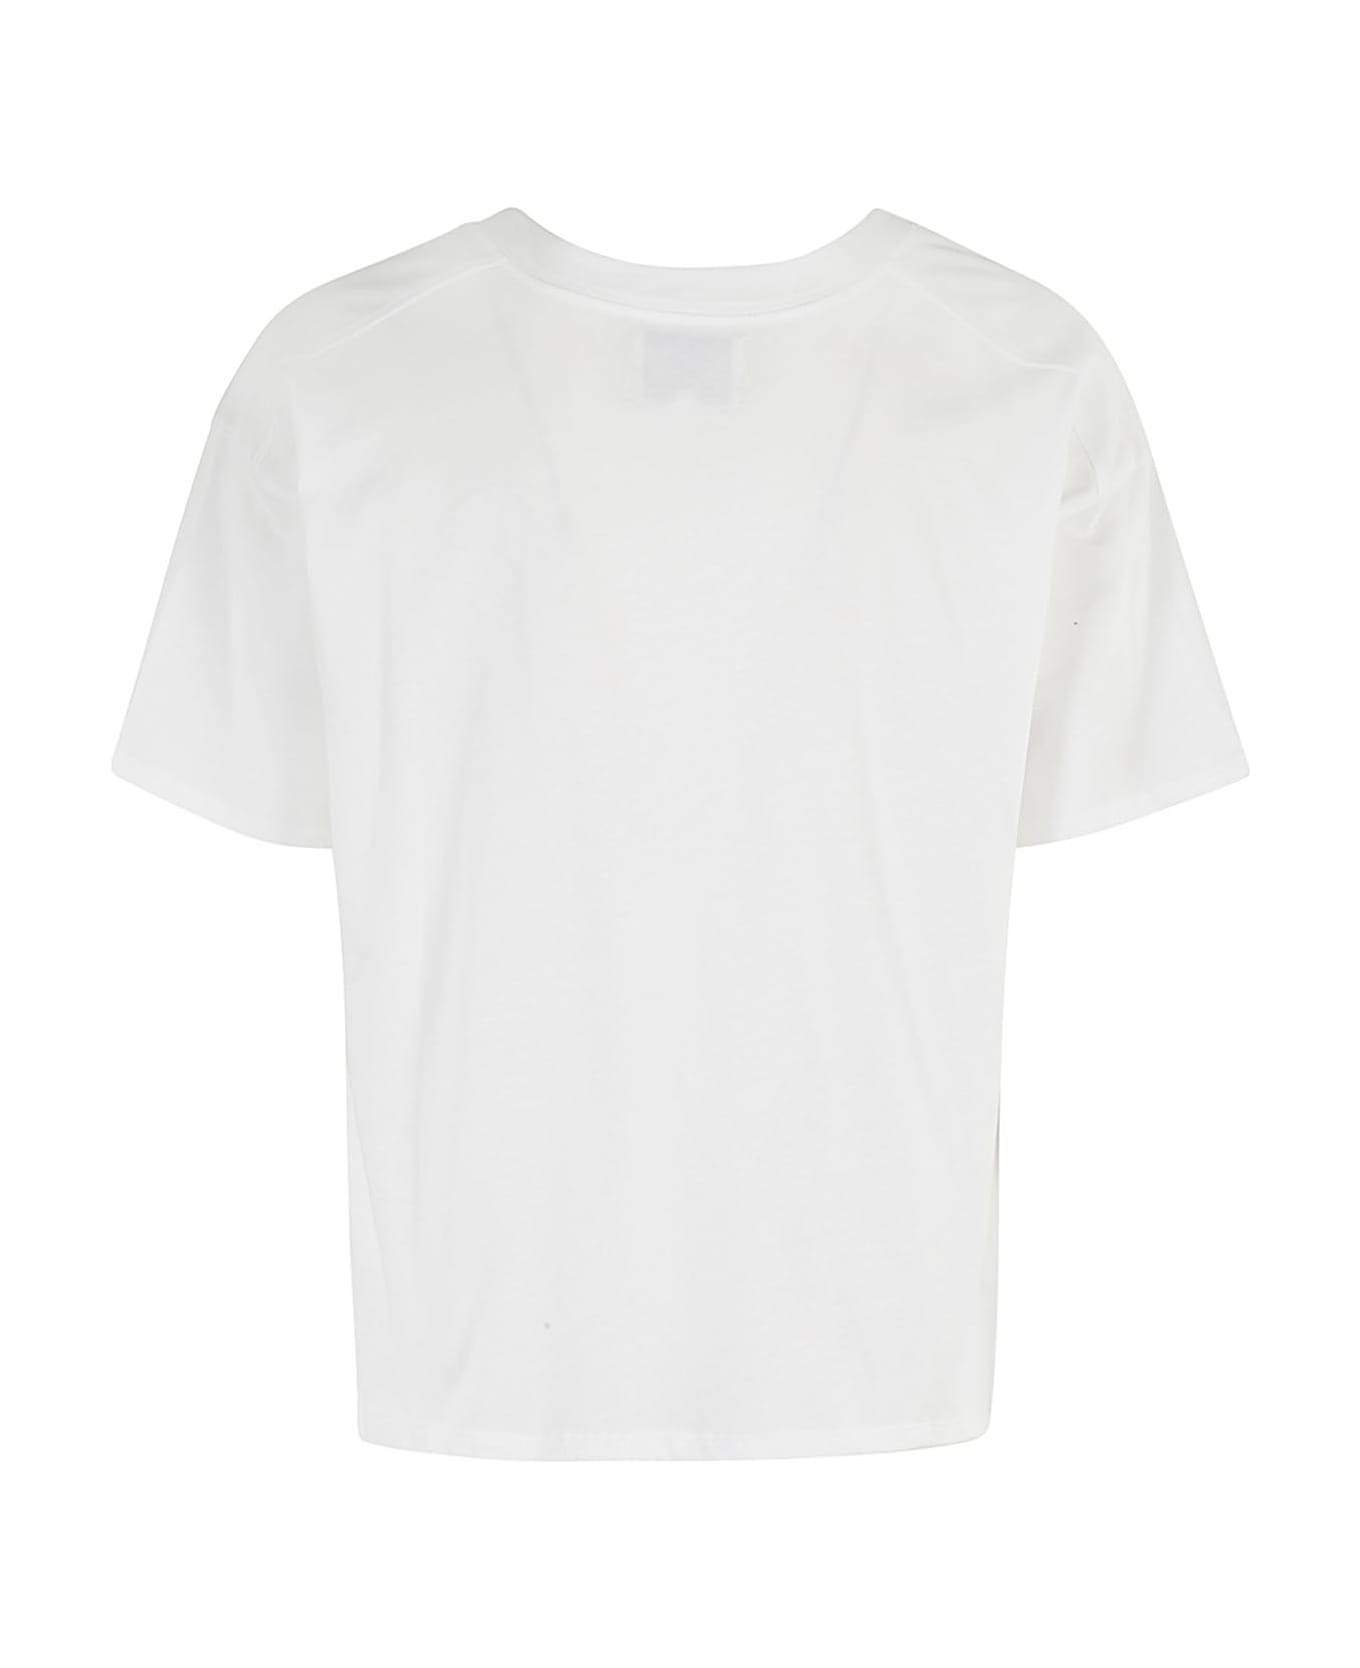 Loulou Studio Tshirt Col V - White Tシャツ